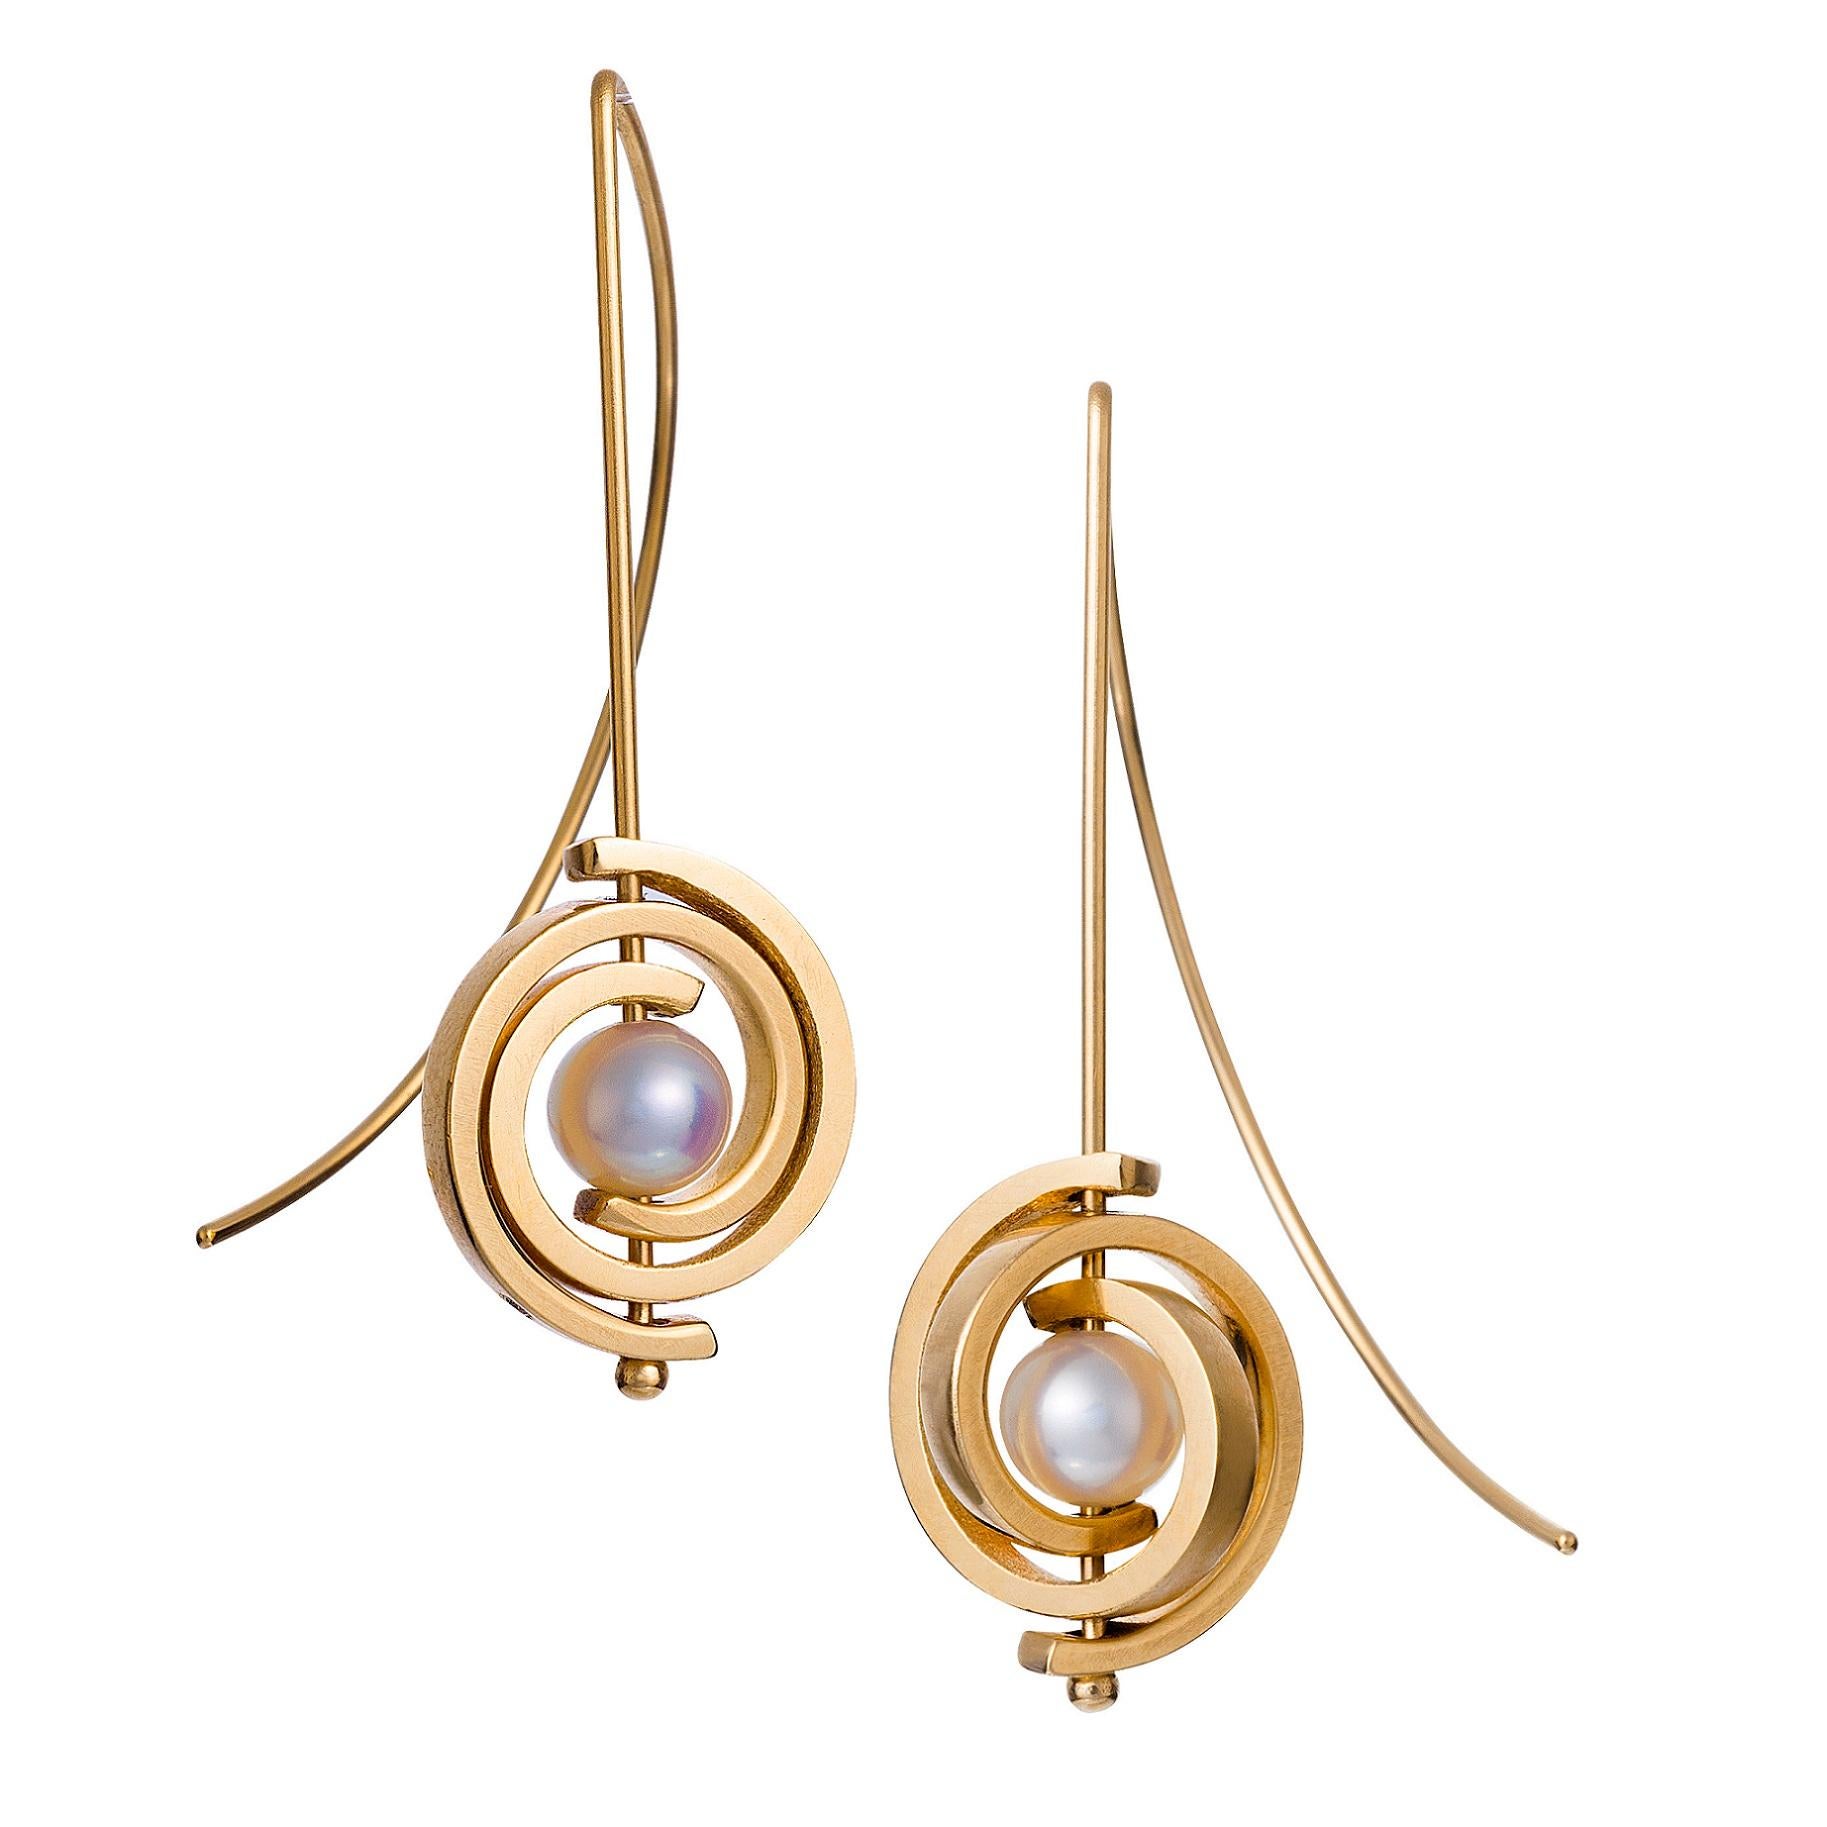 Ces  les boucles d'oreilles pendantes en perles de Tahiti font partie de la collection Orbit. Il s'agit de boucles d'oreilles en spirale de taille moyenne avec des spirales dorées et un fil d'oreille de calibre 20. Les perles rondes noires de Tahiti